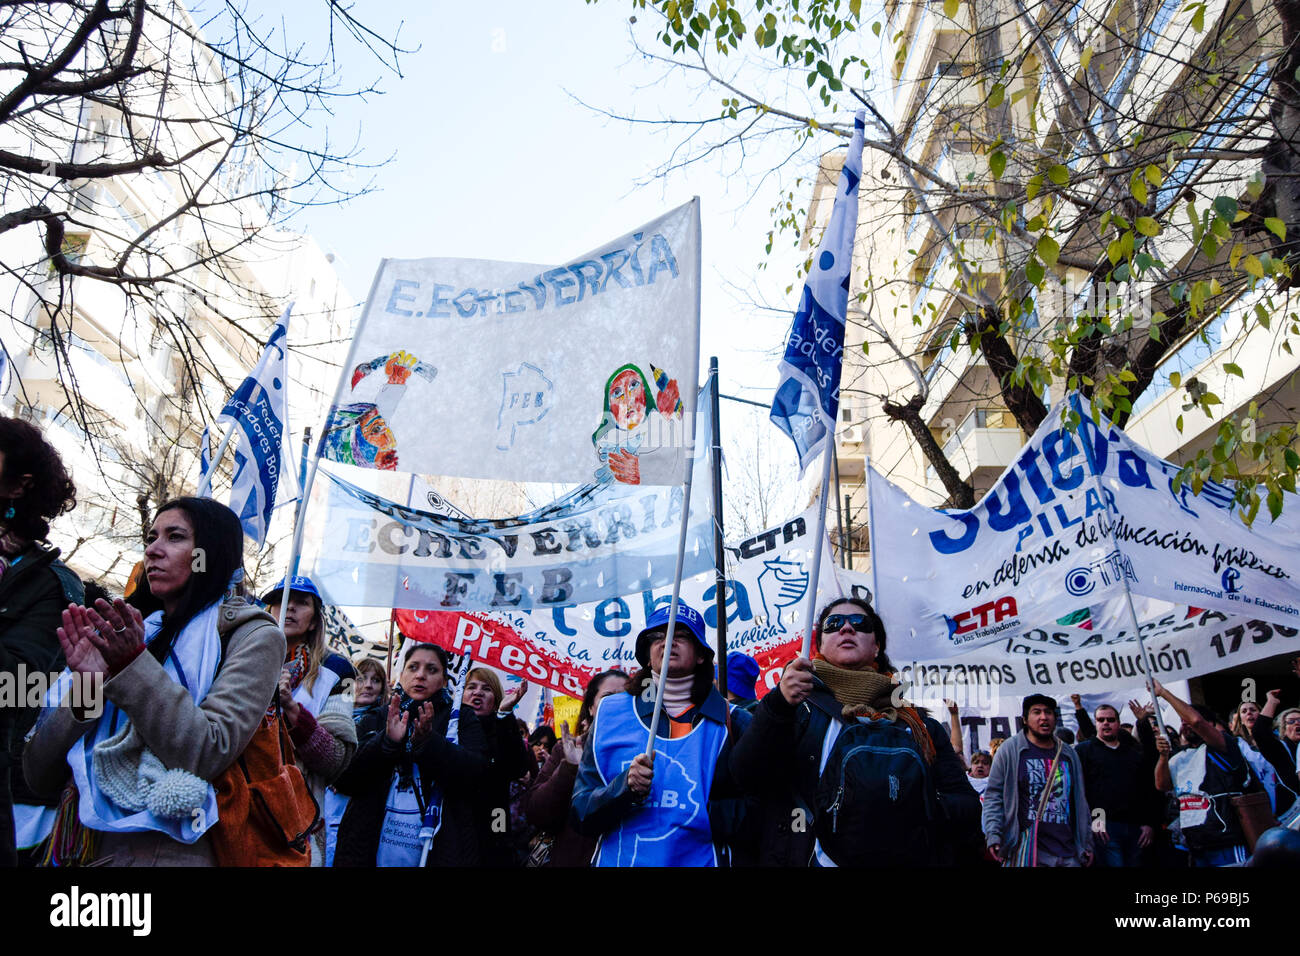 Gilden von Pädagogen auf allen Ebenen mit Fahnen und Banner während der Demonstration. Union der Pädagogen aus der Provinz Buenos Aires Protest an das Ministerium für Bildung in La Plata für eine Gehaltserhöhung von 30 % und einer Aufhebung in der Resolution 1736, erfordern sie auch eine Generalstreik von allen Pädagogen während des Protestes. Stockfoto